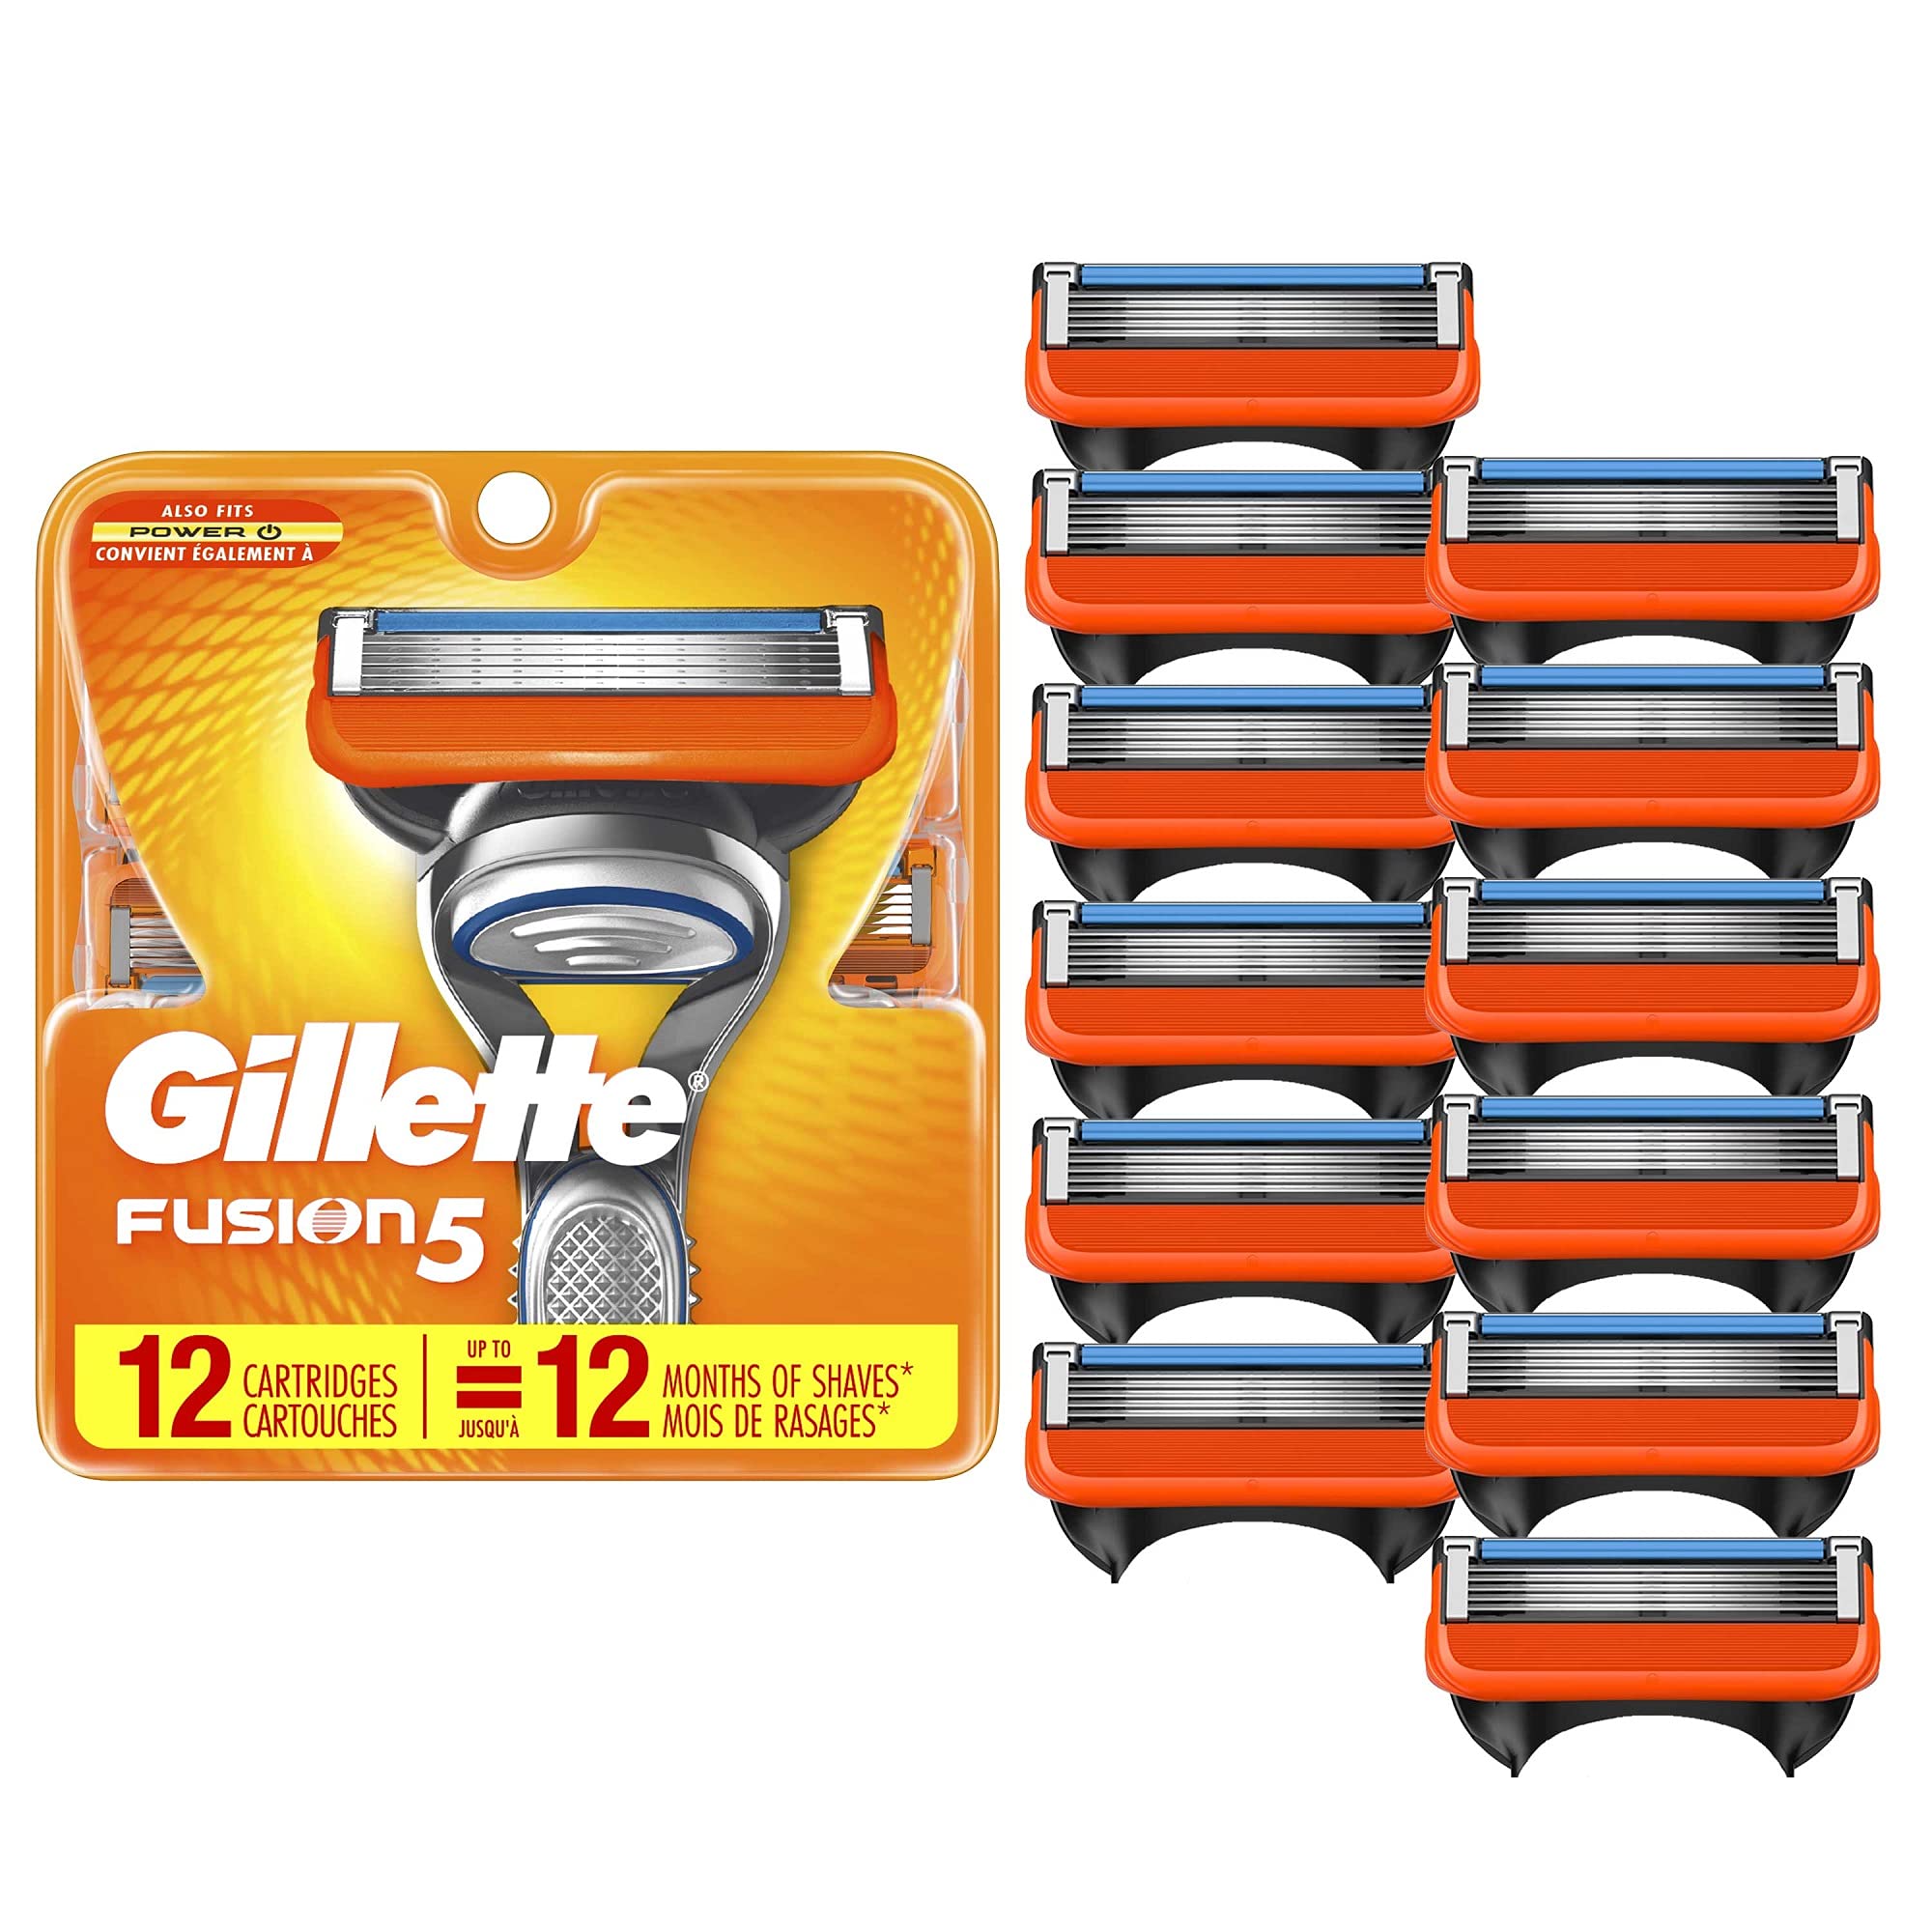 Gillette Fusion5 Cartridges - 12 cartridges